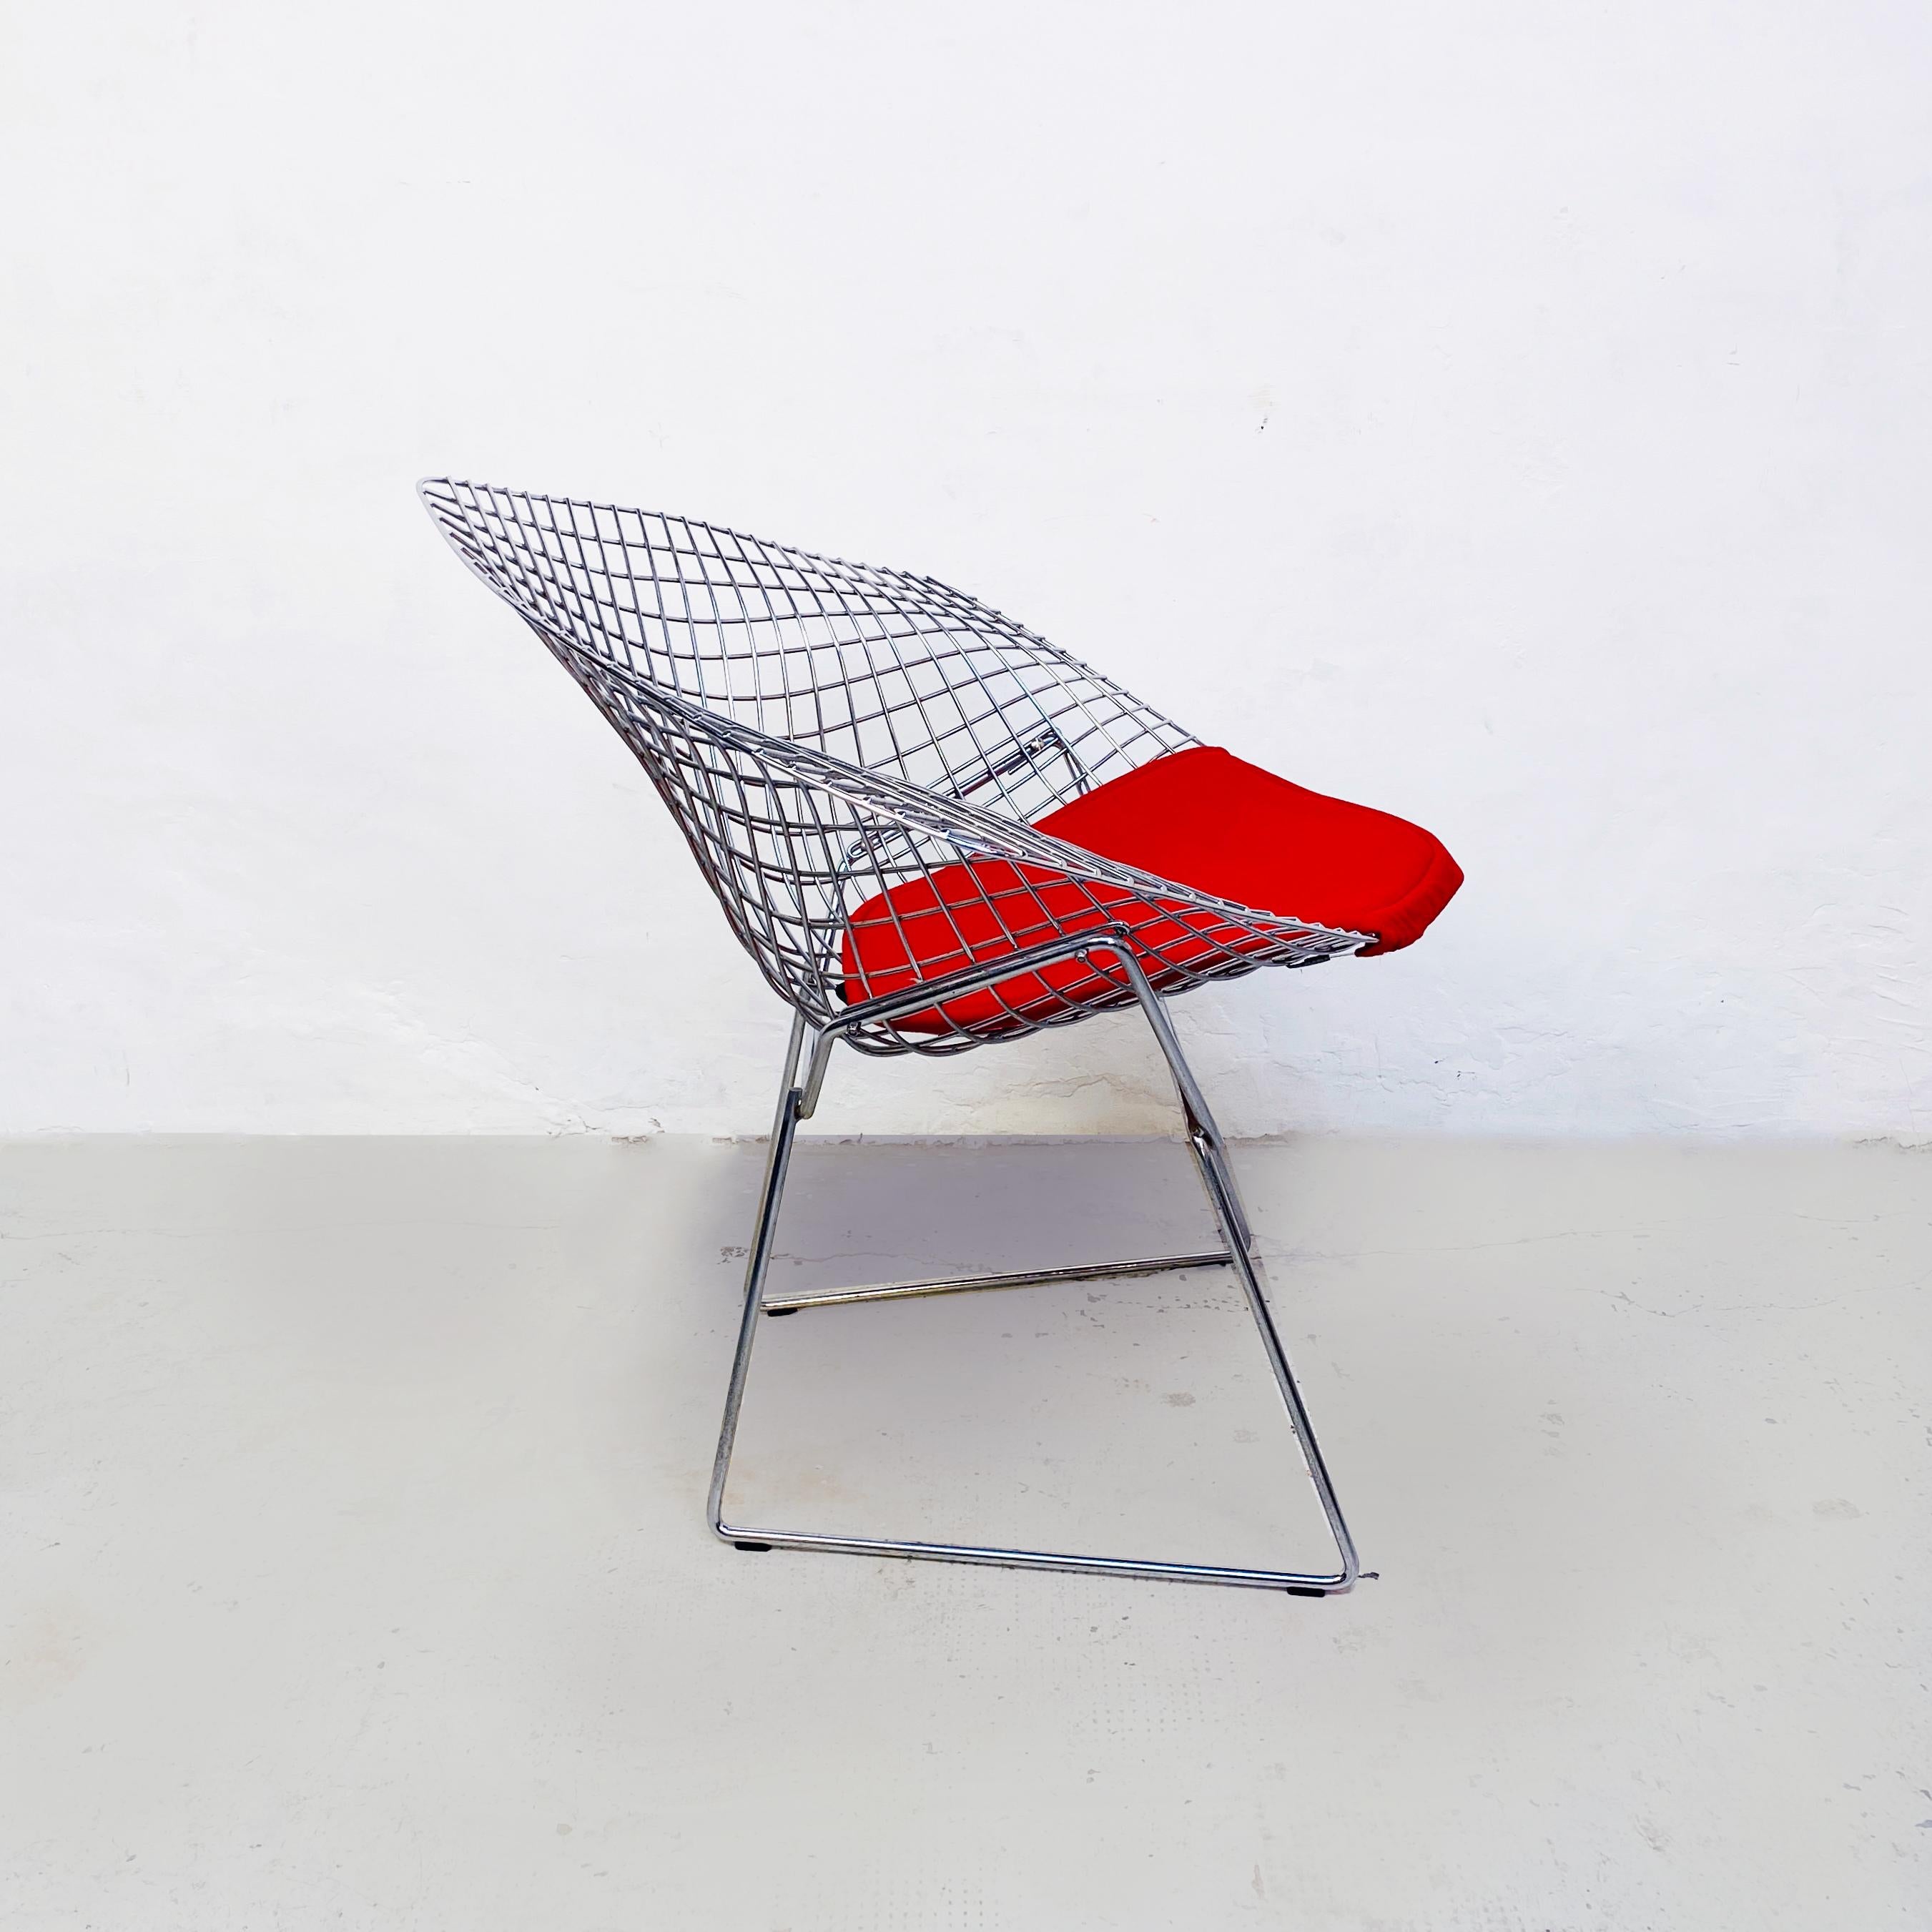 USA mid-century Red cushion and steel Diamond armchair by Bertoia for Knoll, 1970s.
Fauteuil diamant avec structure en tiges d'acier soudées et chromées polies. Le coussin rouge se fixe directement au cadre à l'aide d'un monofilament caché et de